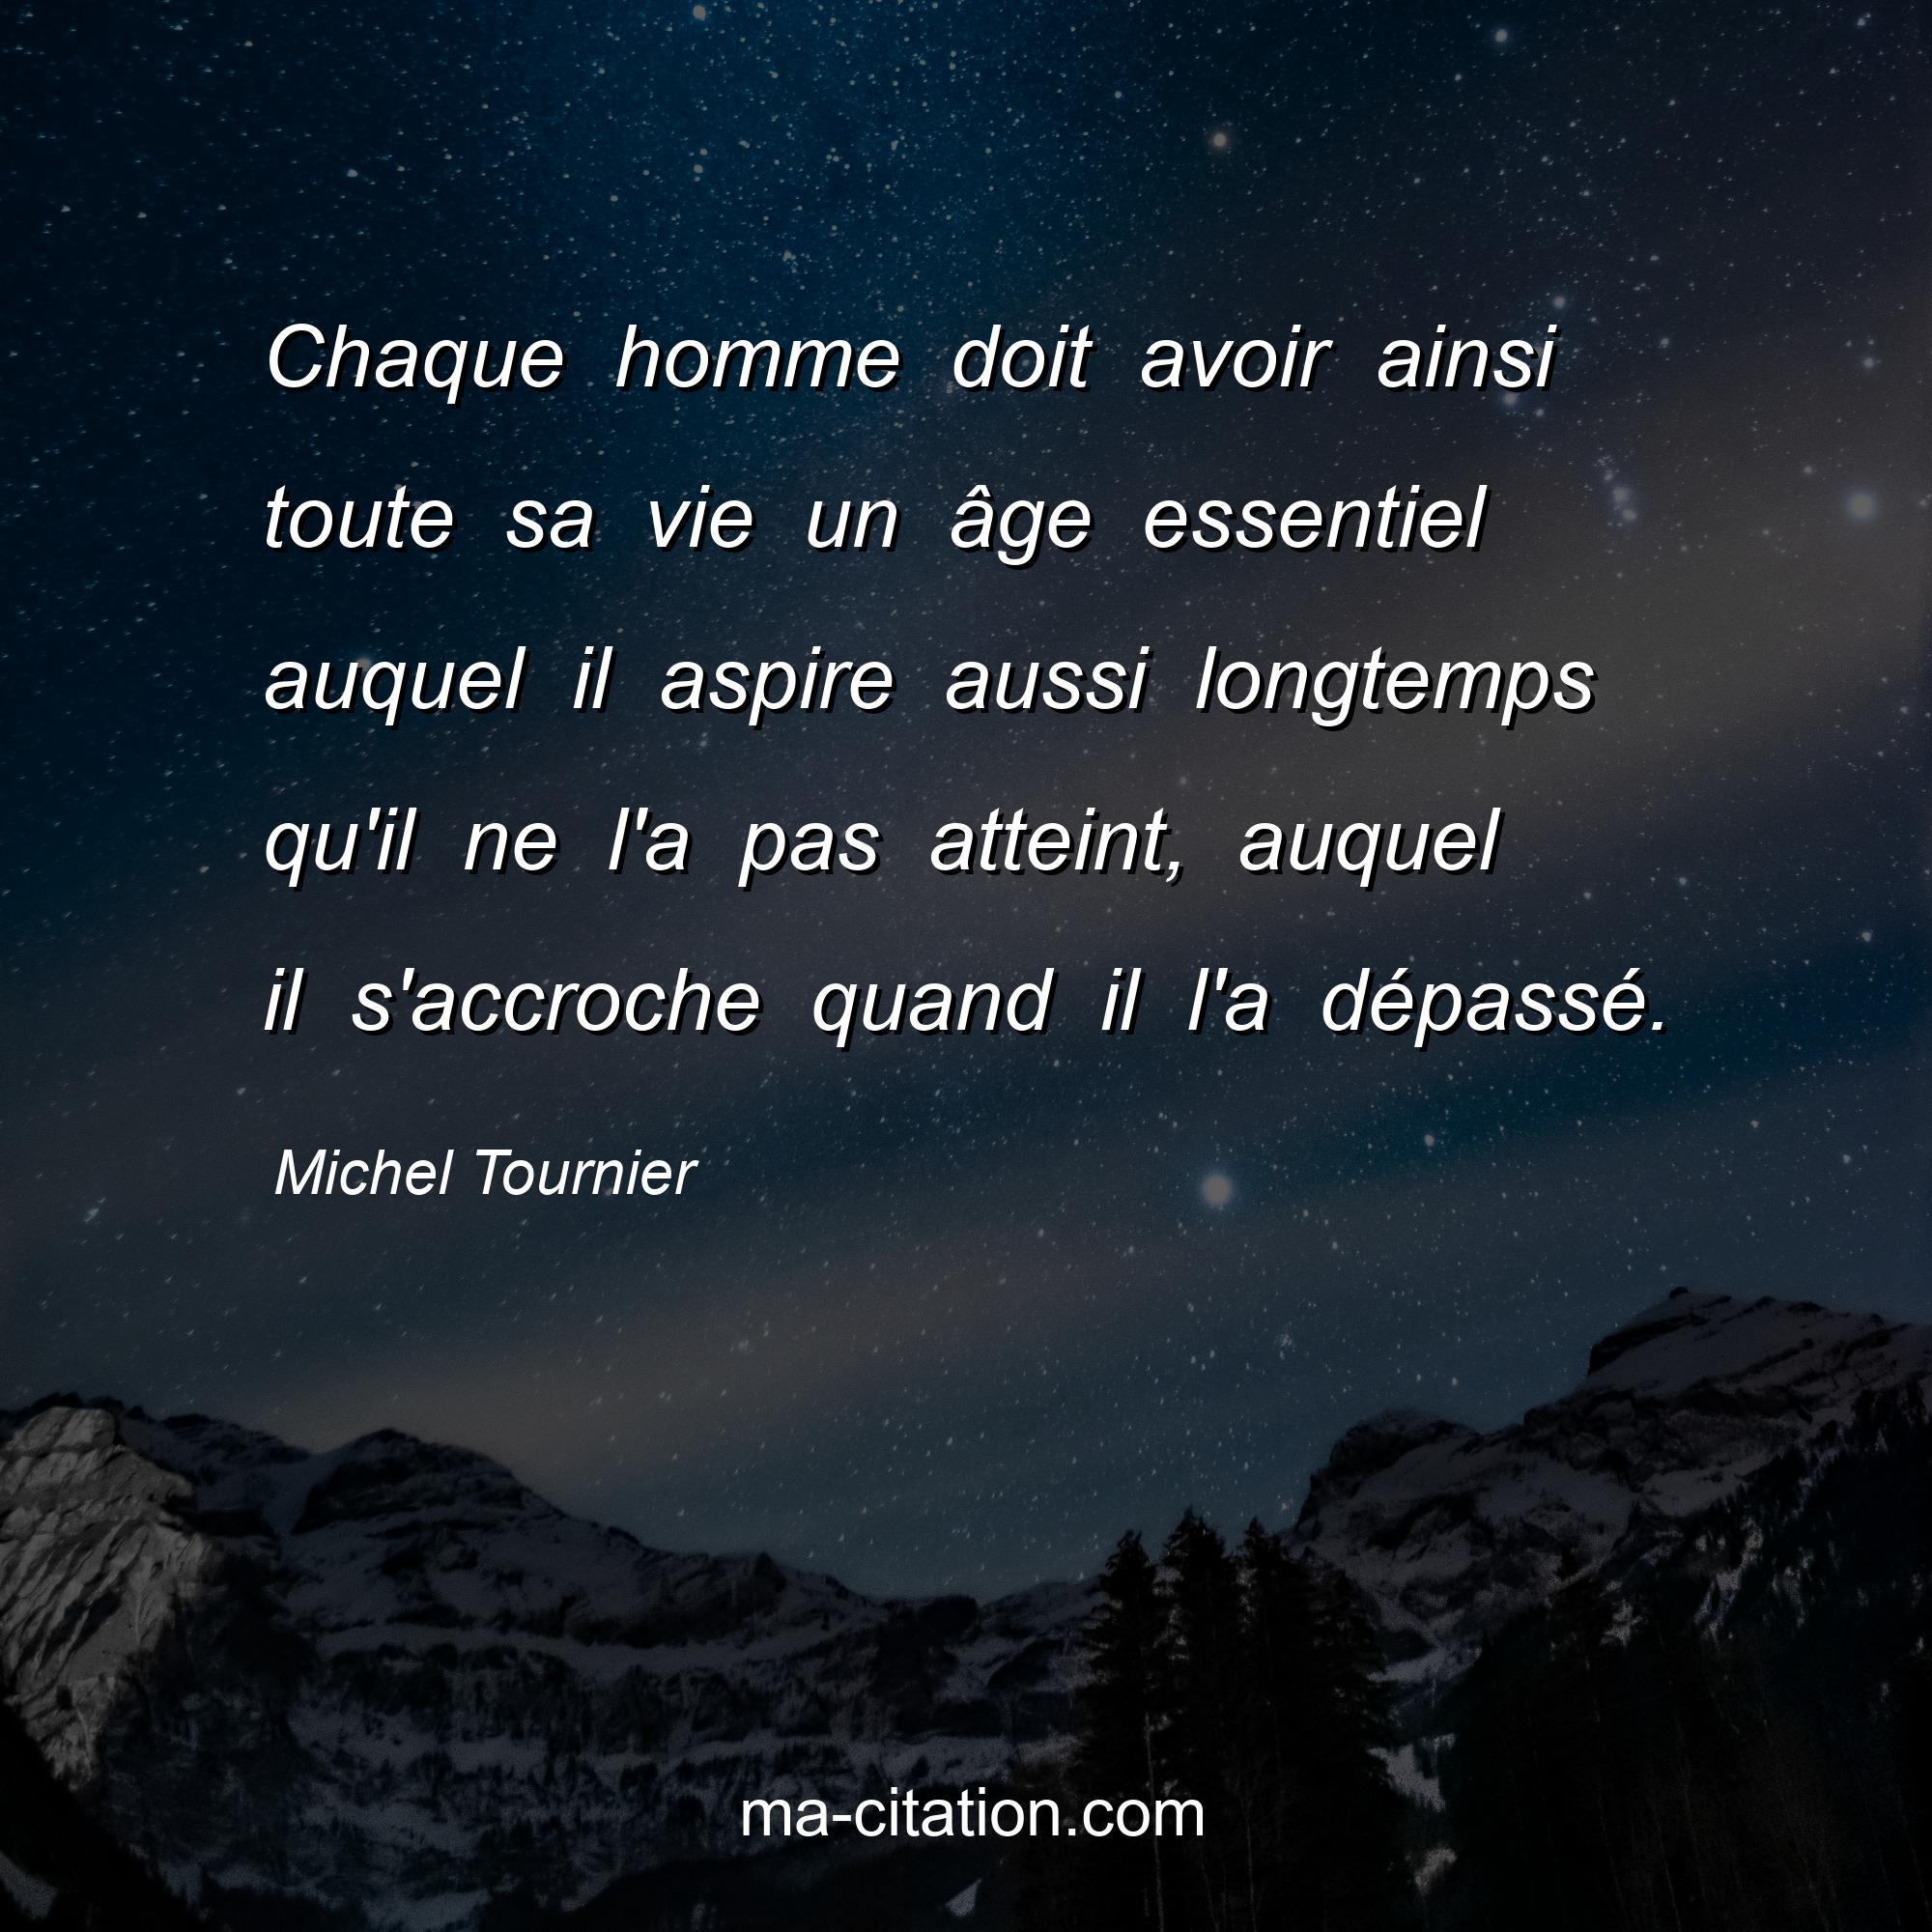 Michel Tournier : Chaque homme doit avoir ainsi toute sa vie un âge essentiel auquel il aspire aussi longtemps qu'il ne l'a pas atteint, auquel il s'accroche quand il l'a dépassé.